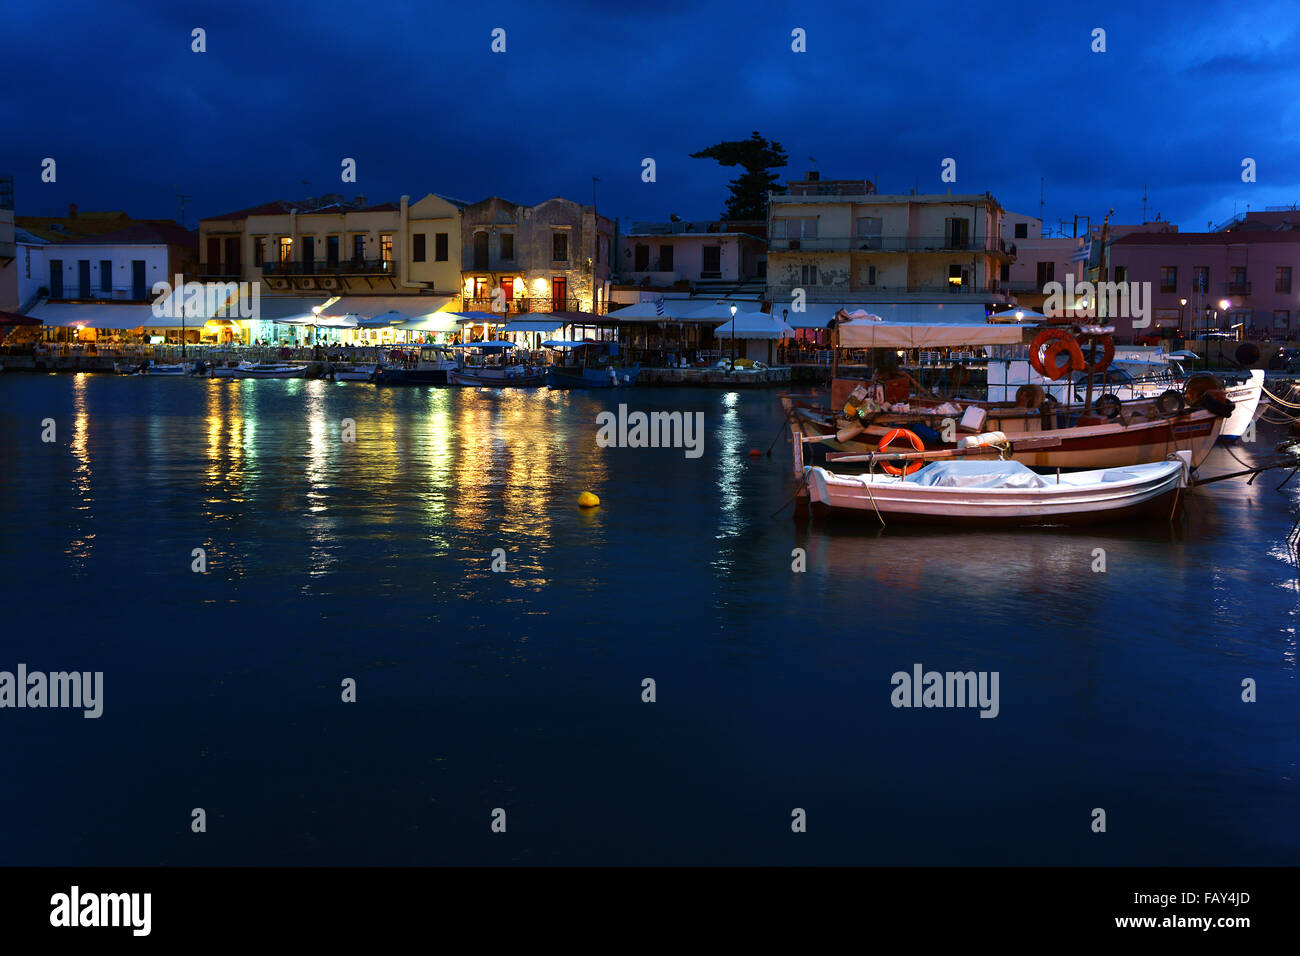 Il porto e la città vecchia Rethimno con ristoranti al crepuscolo, isola di Creta, Grecia Foto Stock